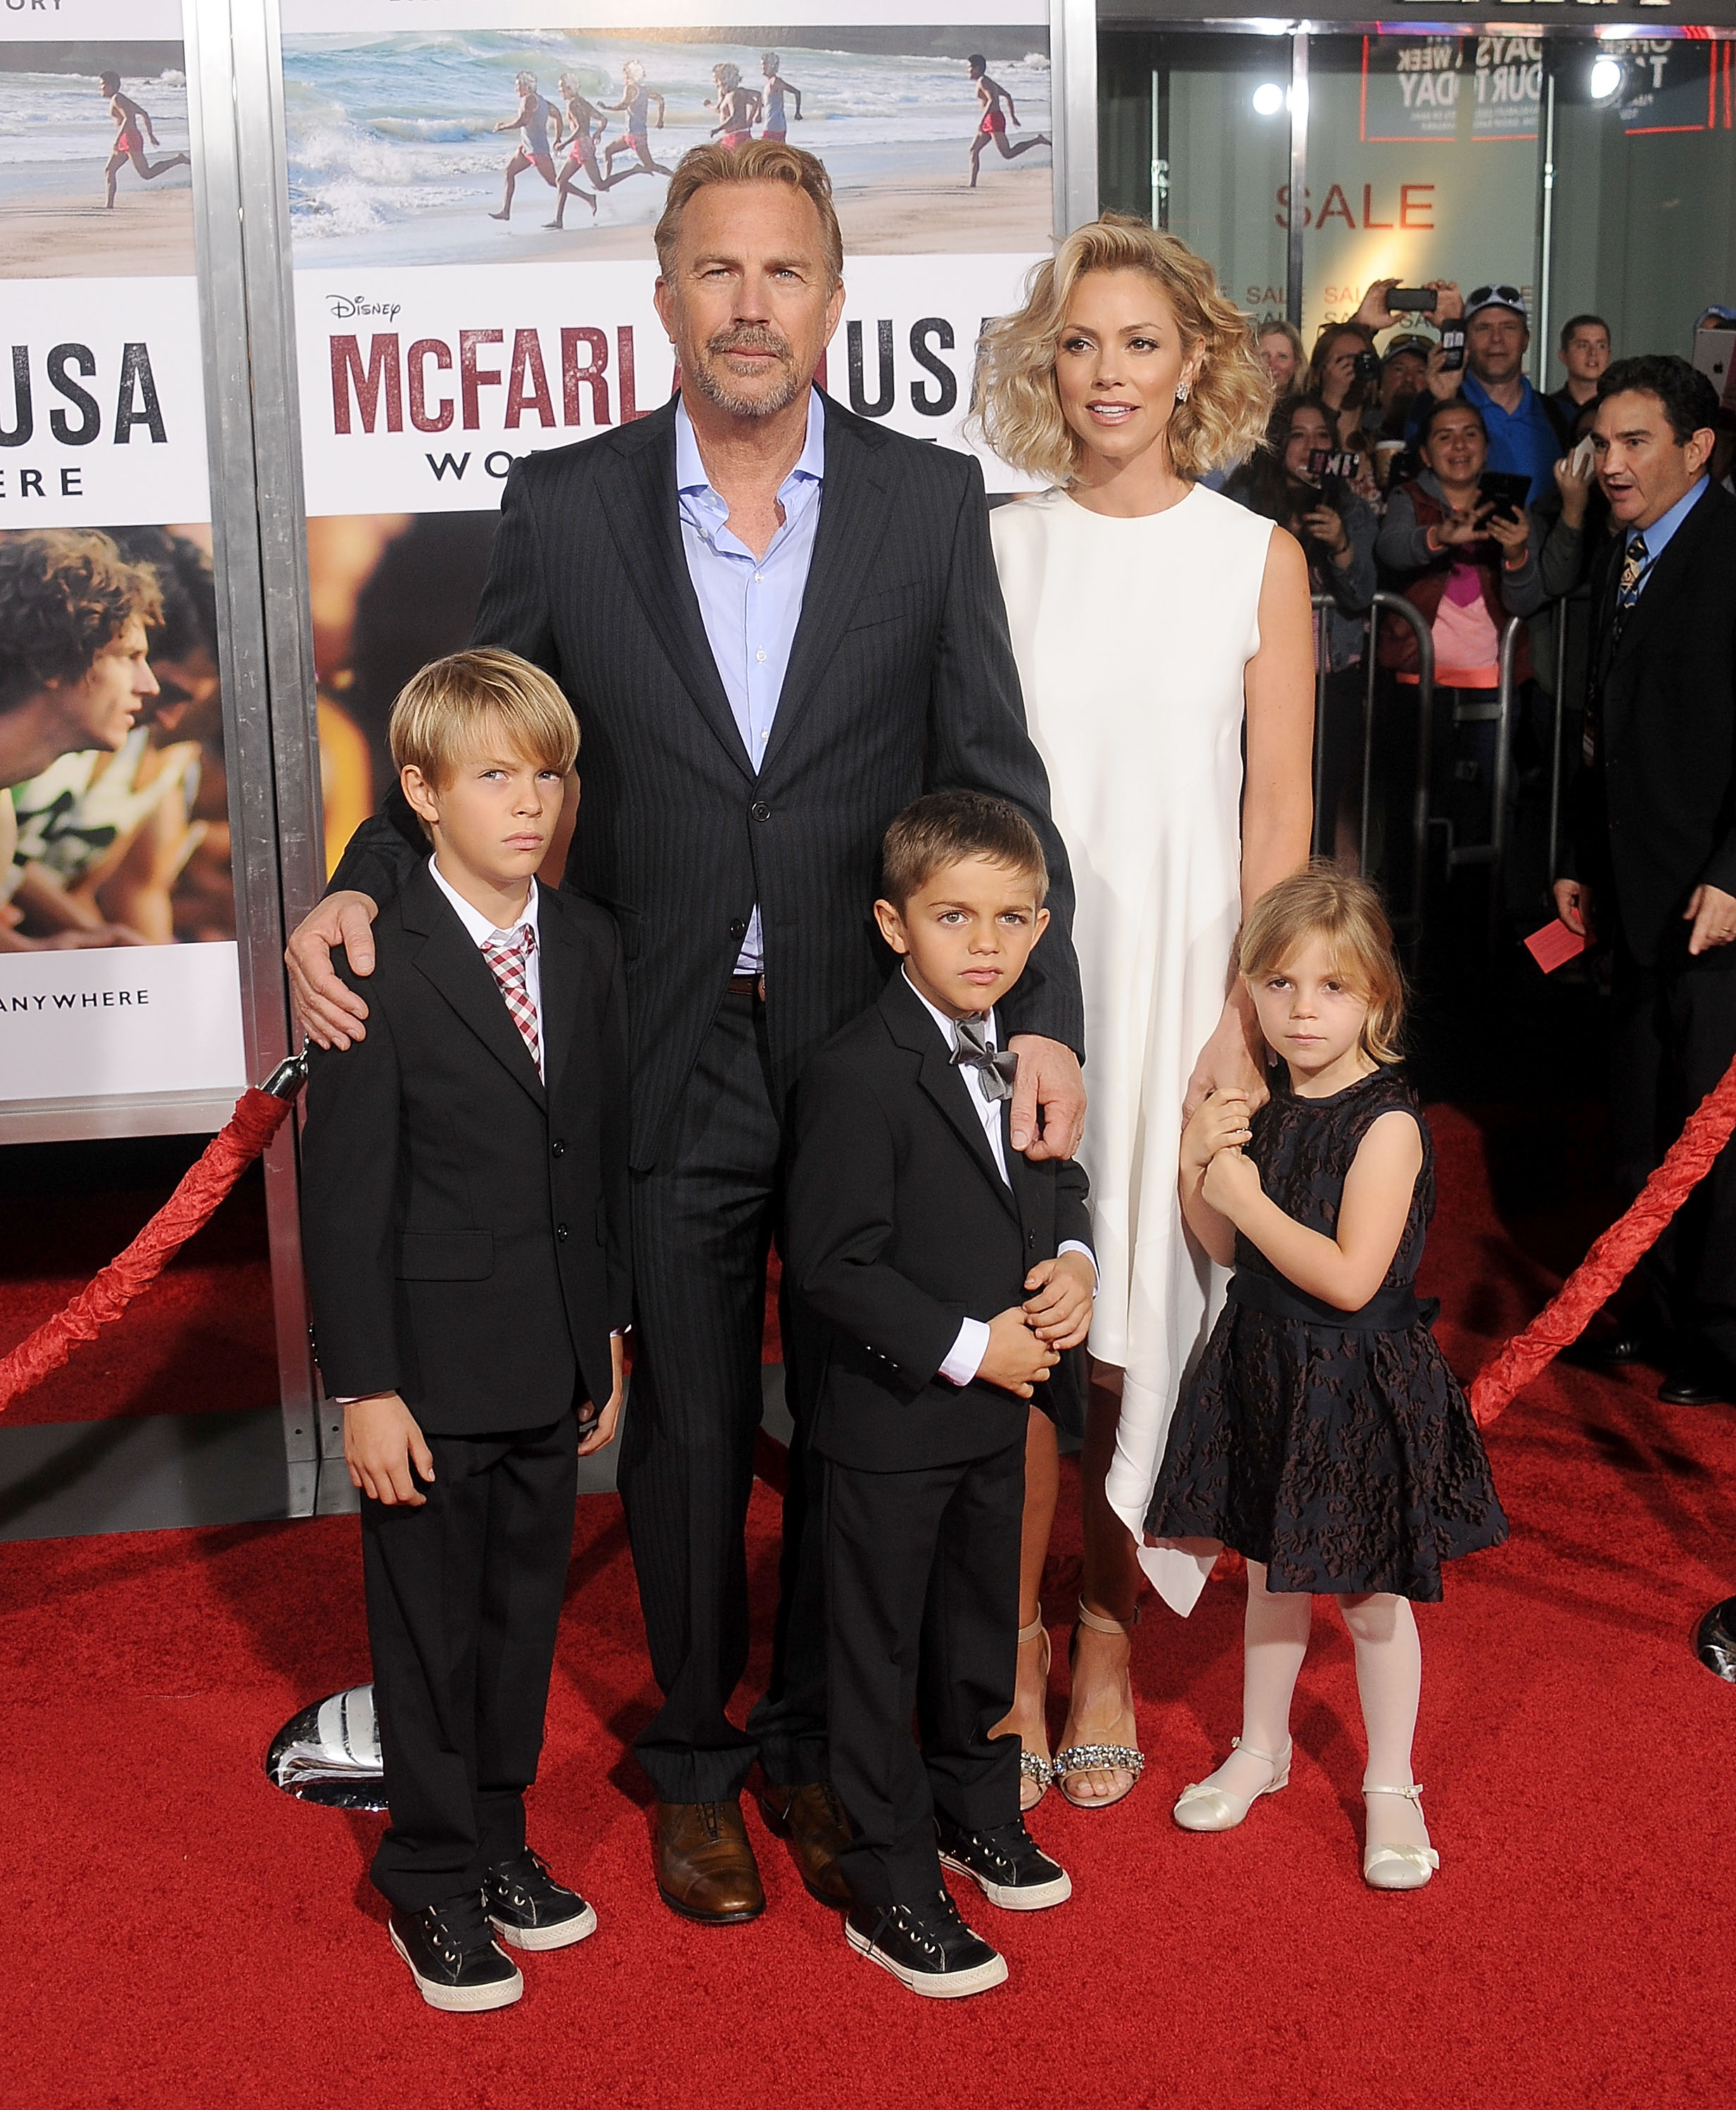 Kevin Costner, su esposa Christine Baumgartner y sus hijos Grace Avery, Hayes Logan y Cayden Wyatt Costner en el estreno mundial de "McFarland, USA" el 9 de febrero de 2015 en Hollywood, California | Foto: Getty Images